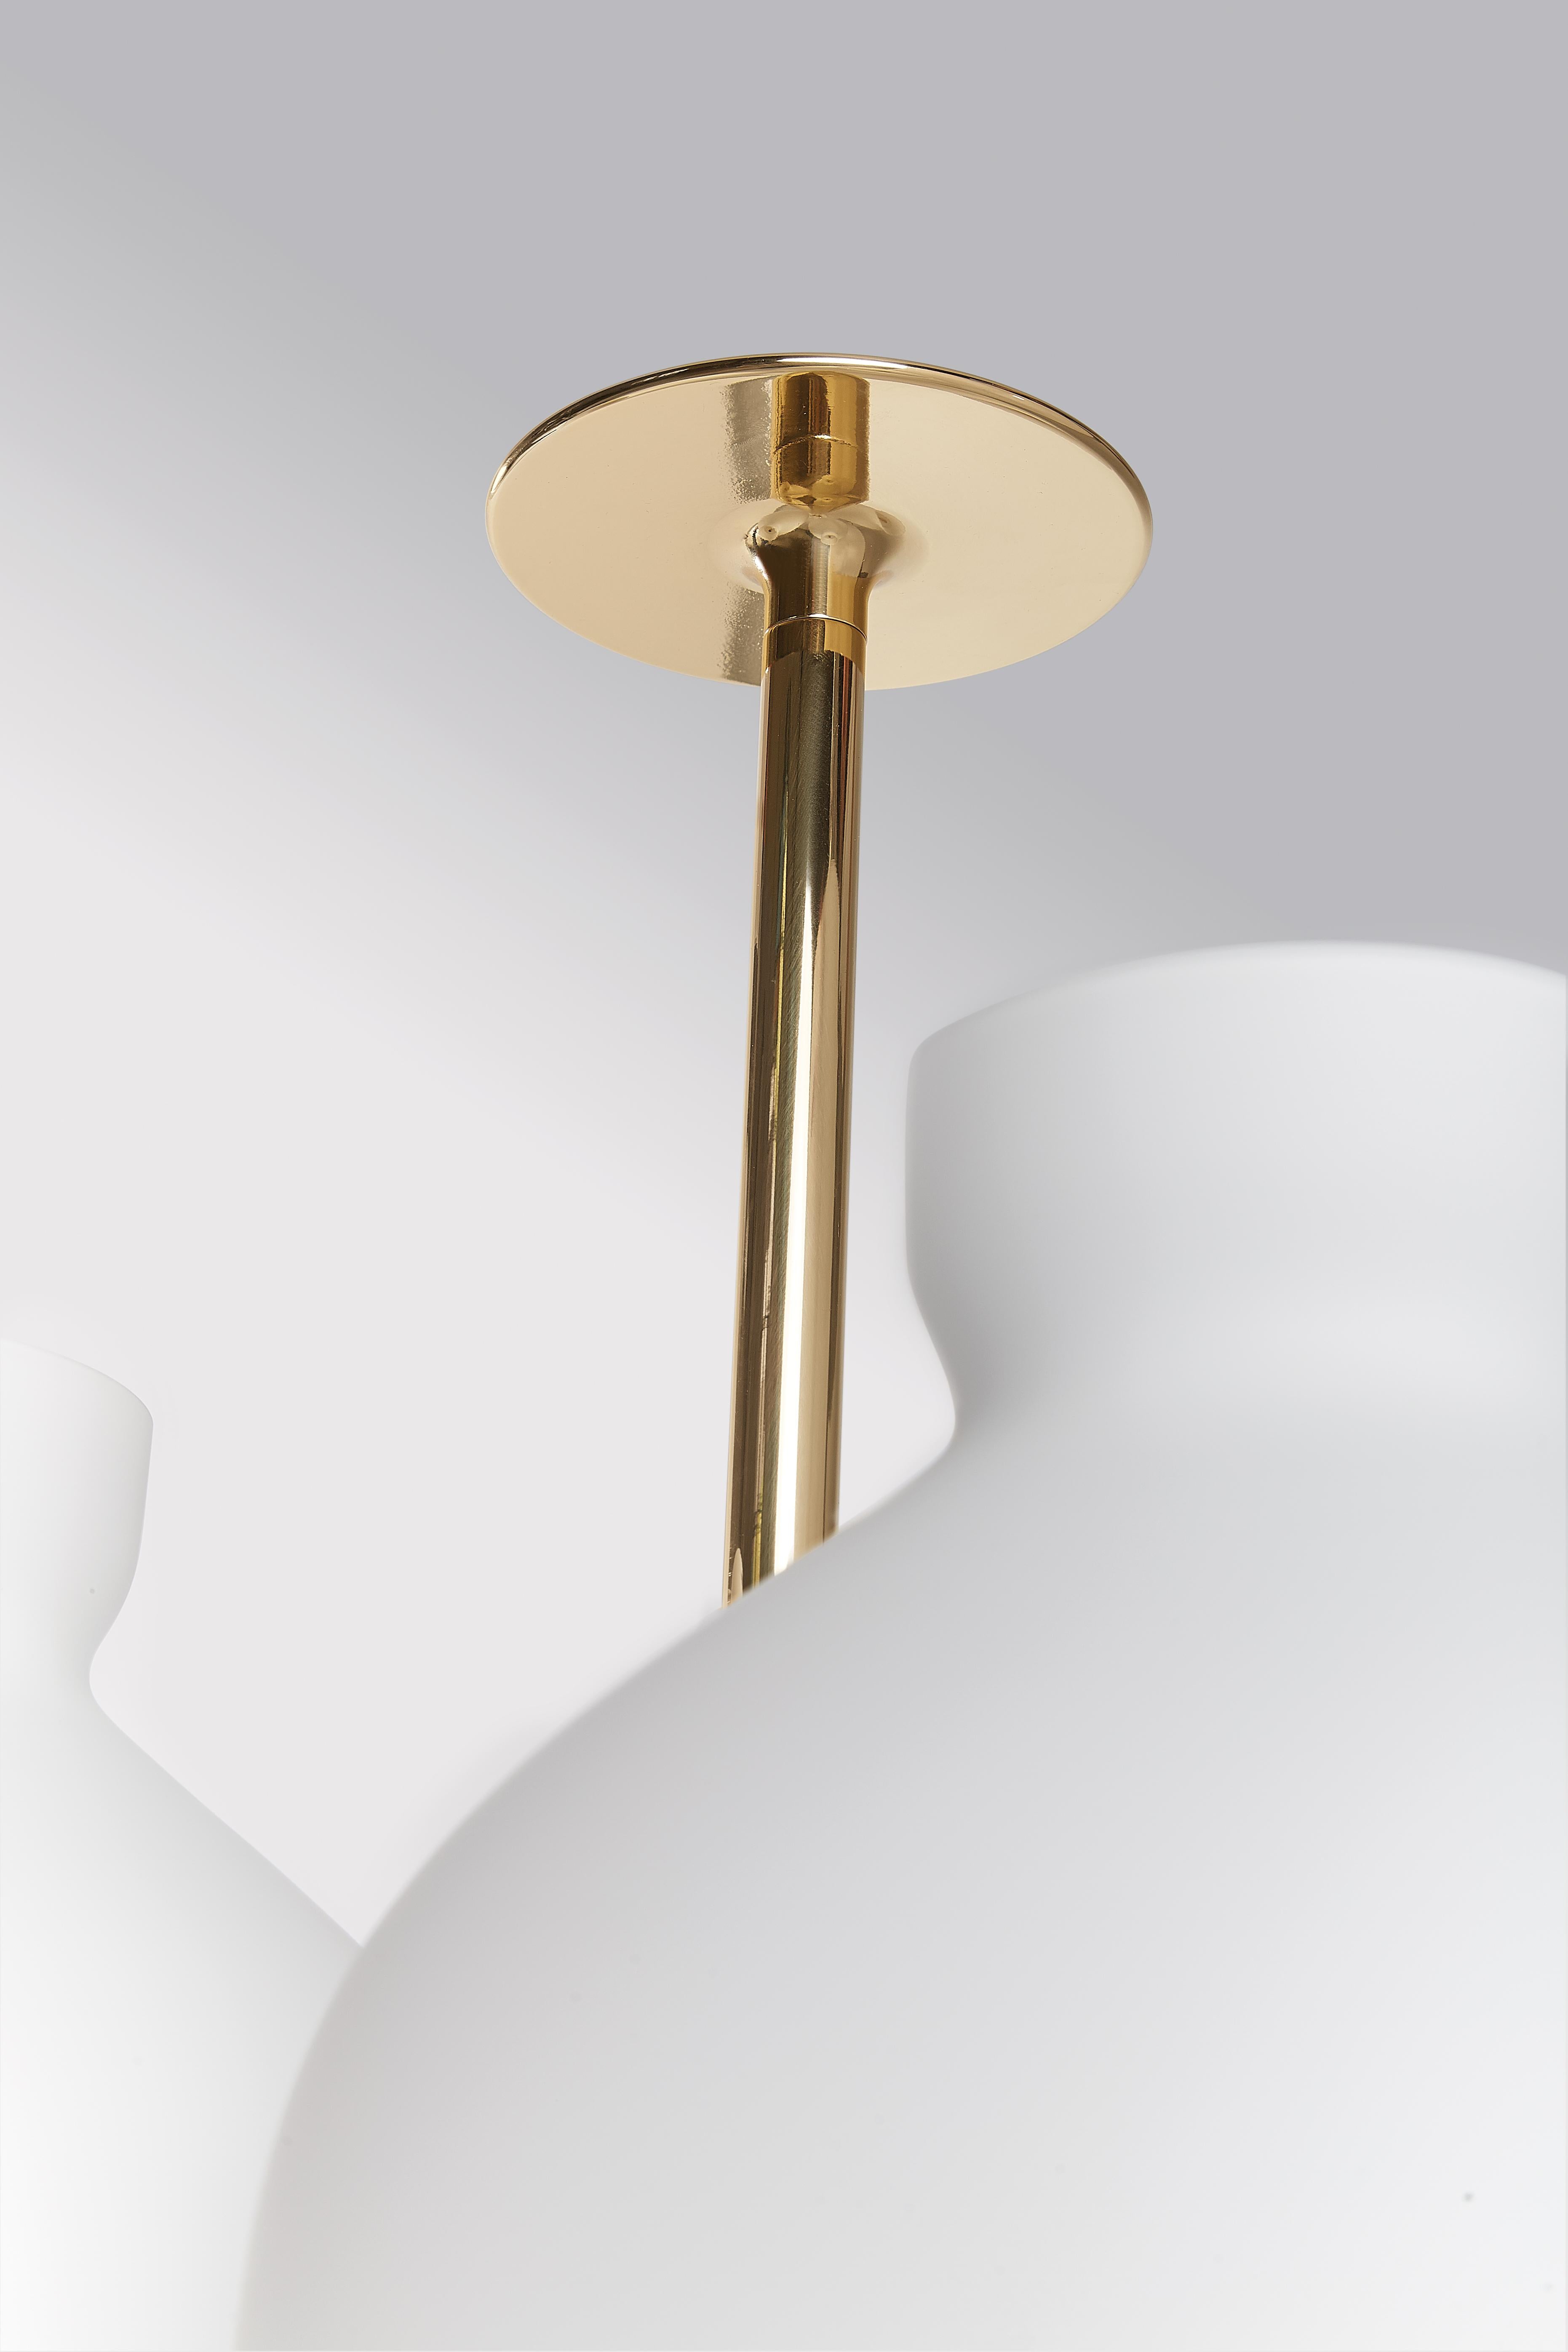 Italian Ignazio Gardella 'Arenzano Tre Fiamme' Table Lamp in Black Marble and Brass For Sale